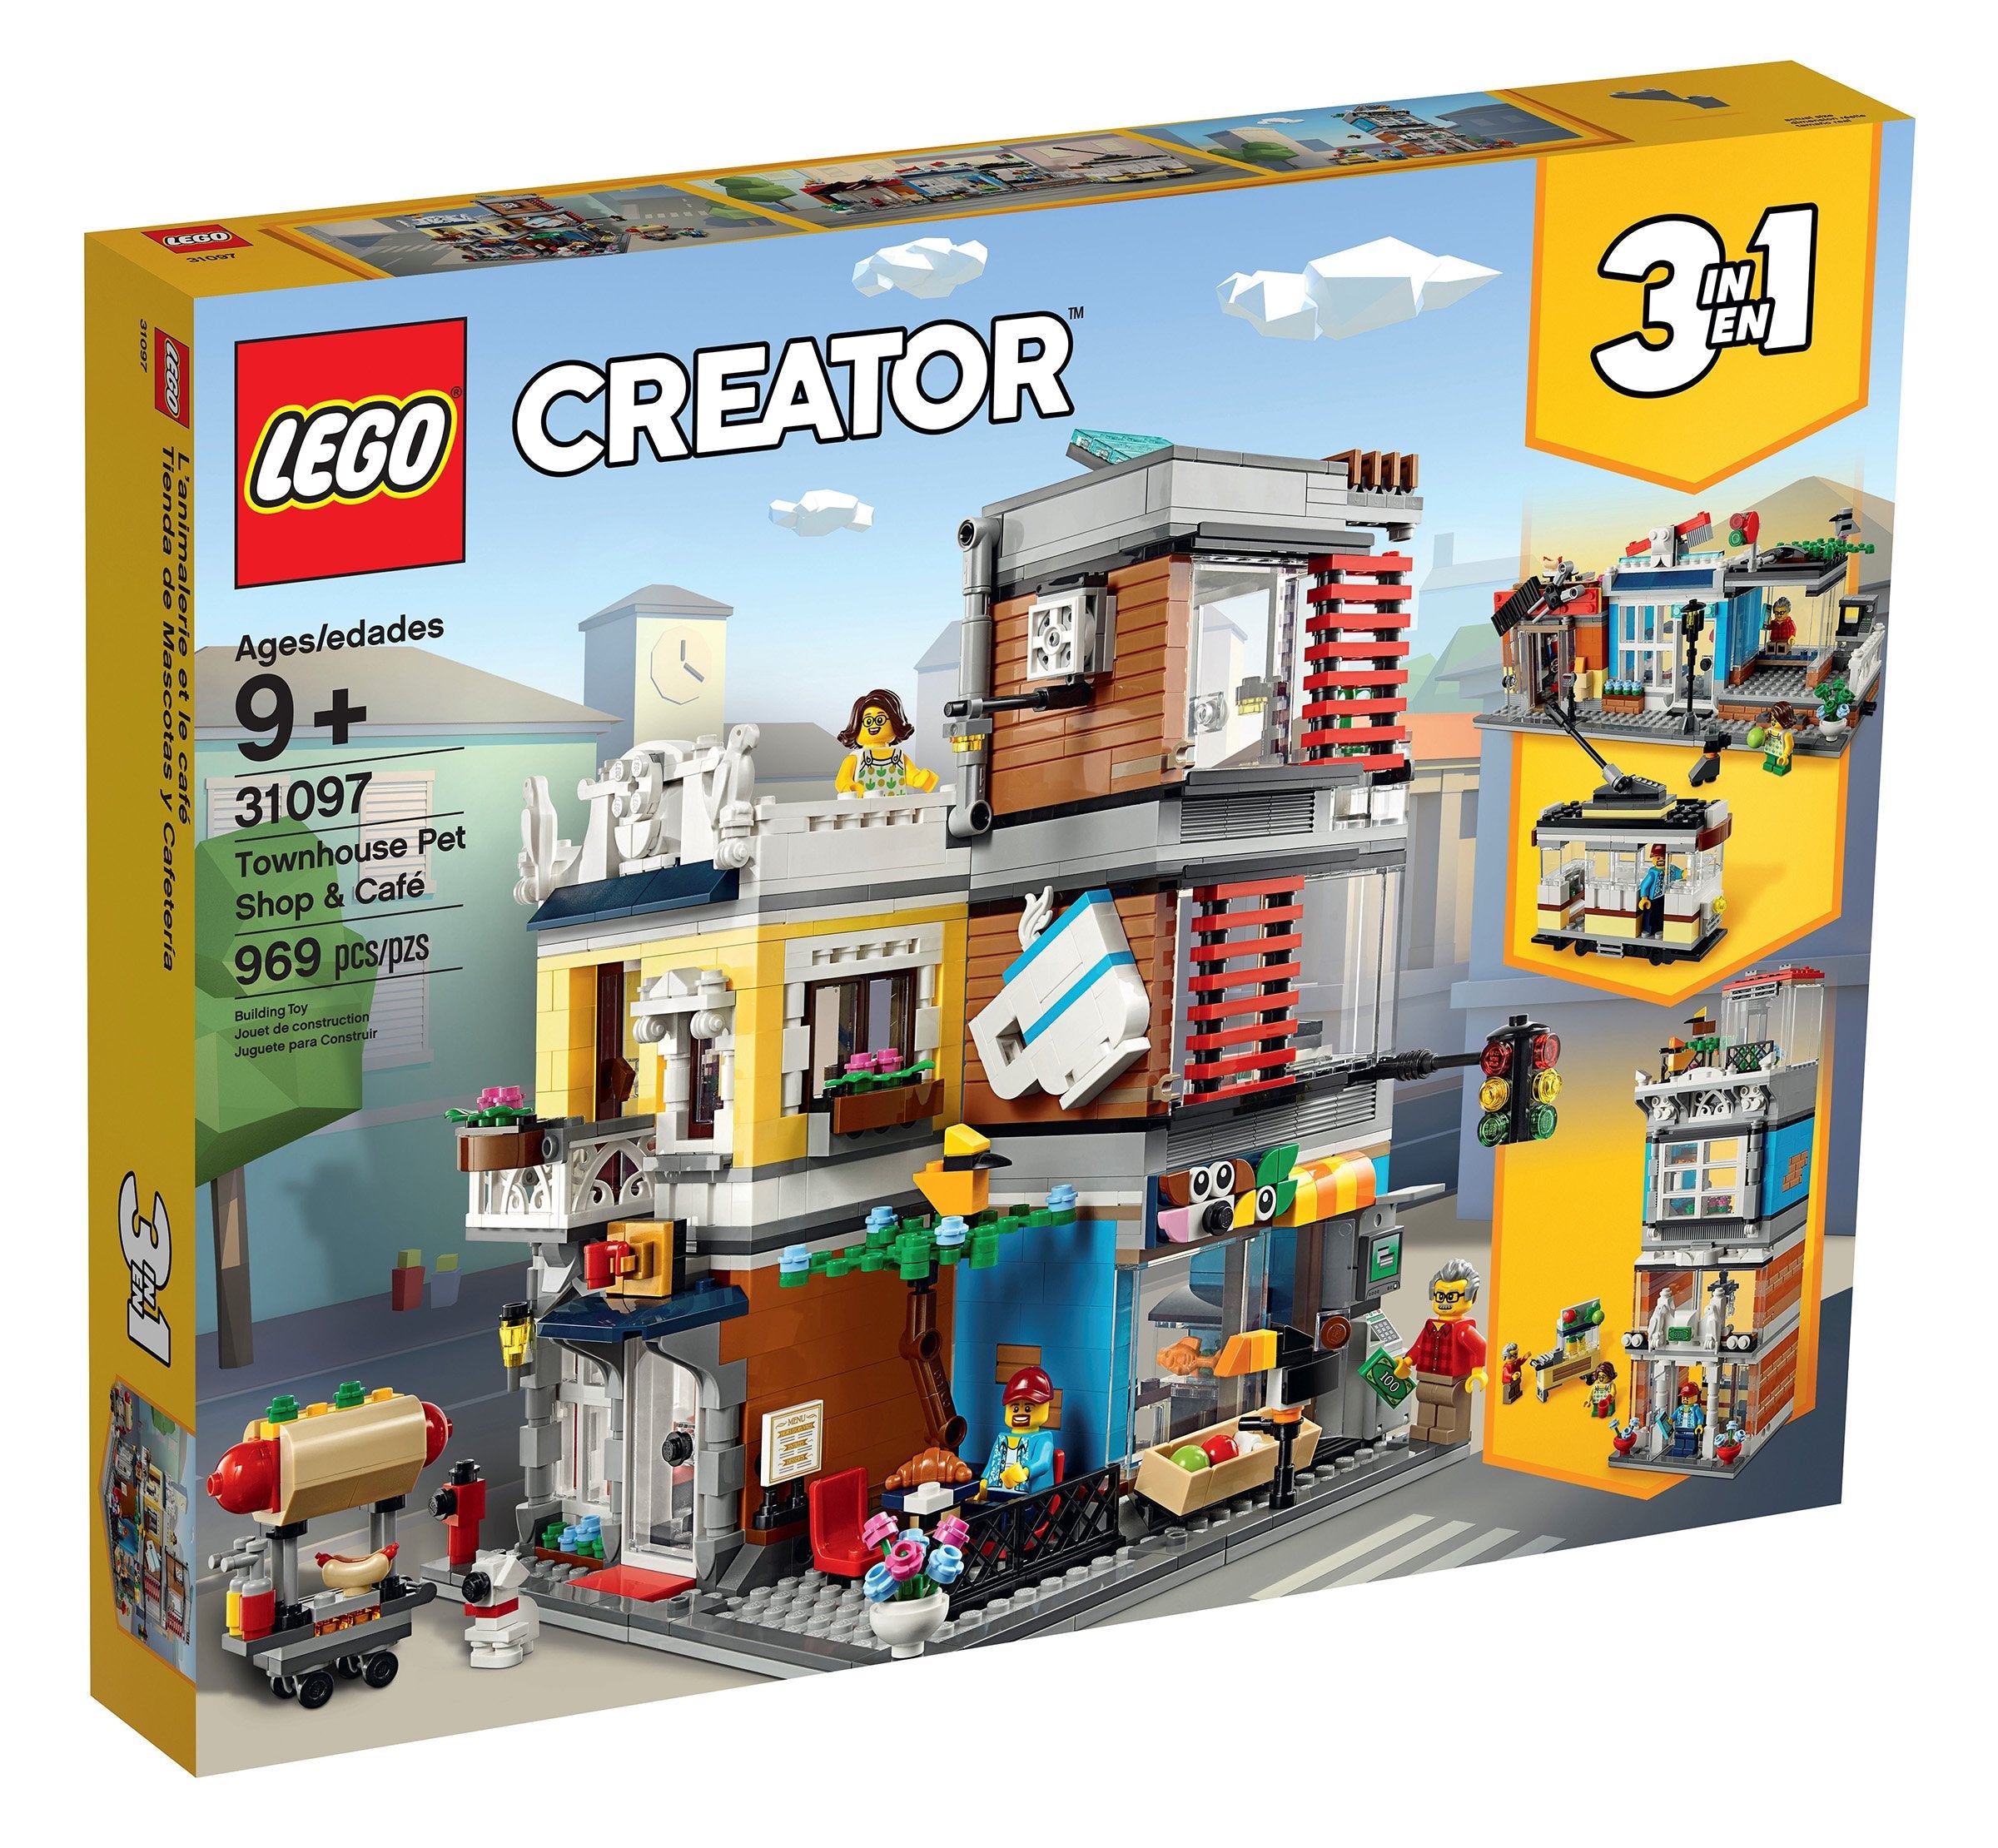 LEGO Creator 3-in-1 Stadthaus mit Zoohandlung & Café (31097) - im GOLDSTIEN.SHOP verfügbar mit Gratisversand ab Schweizer Lager! (5702016367911)